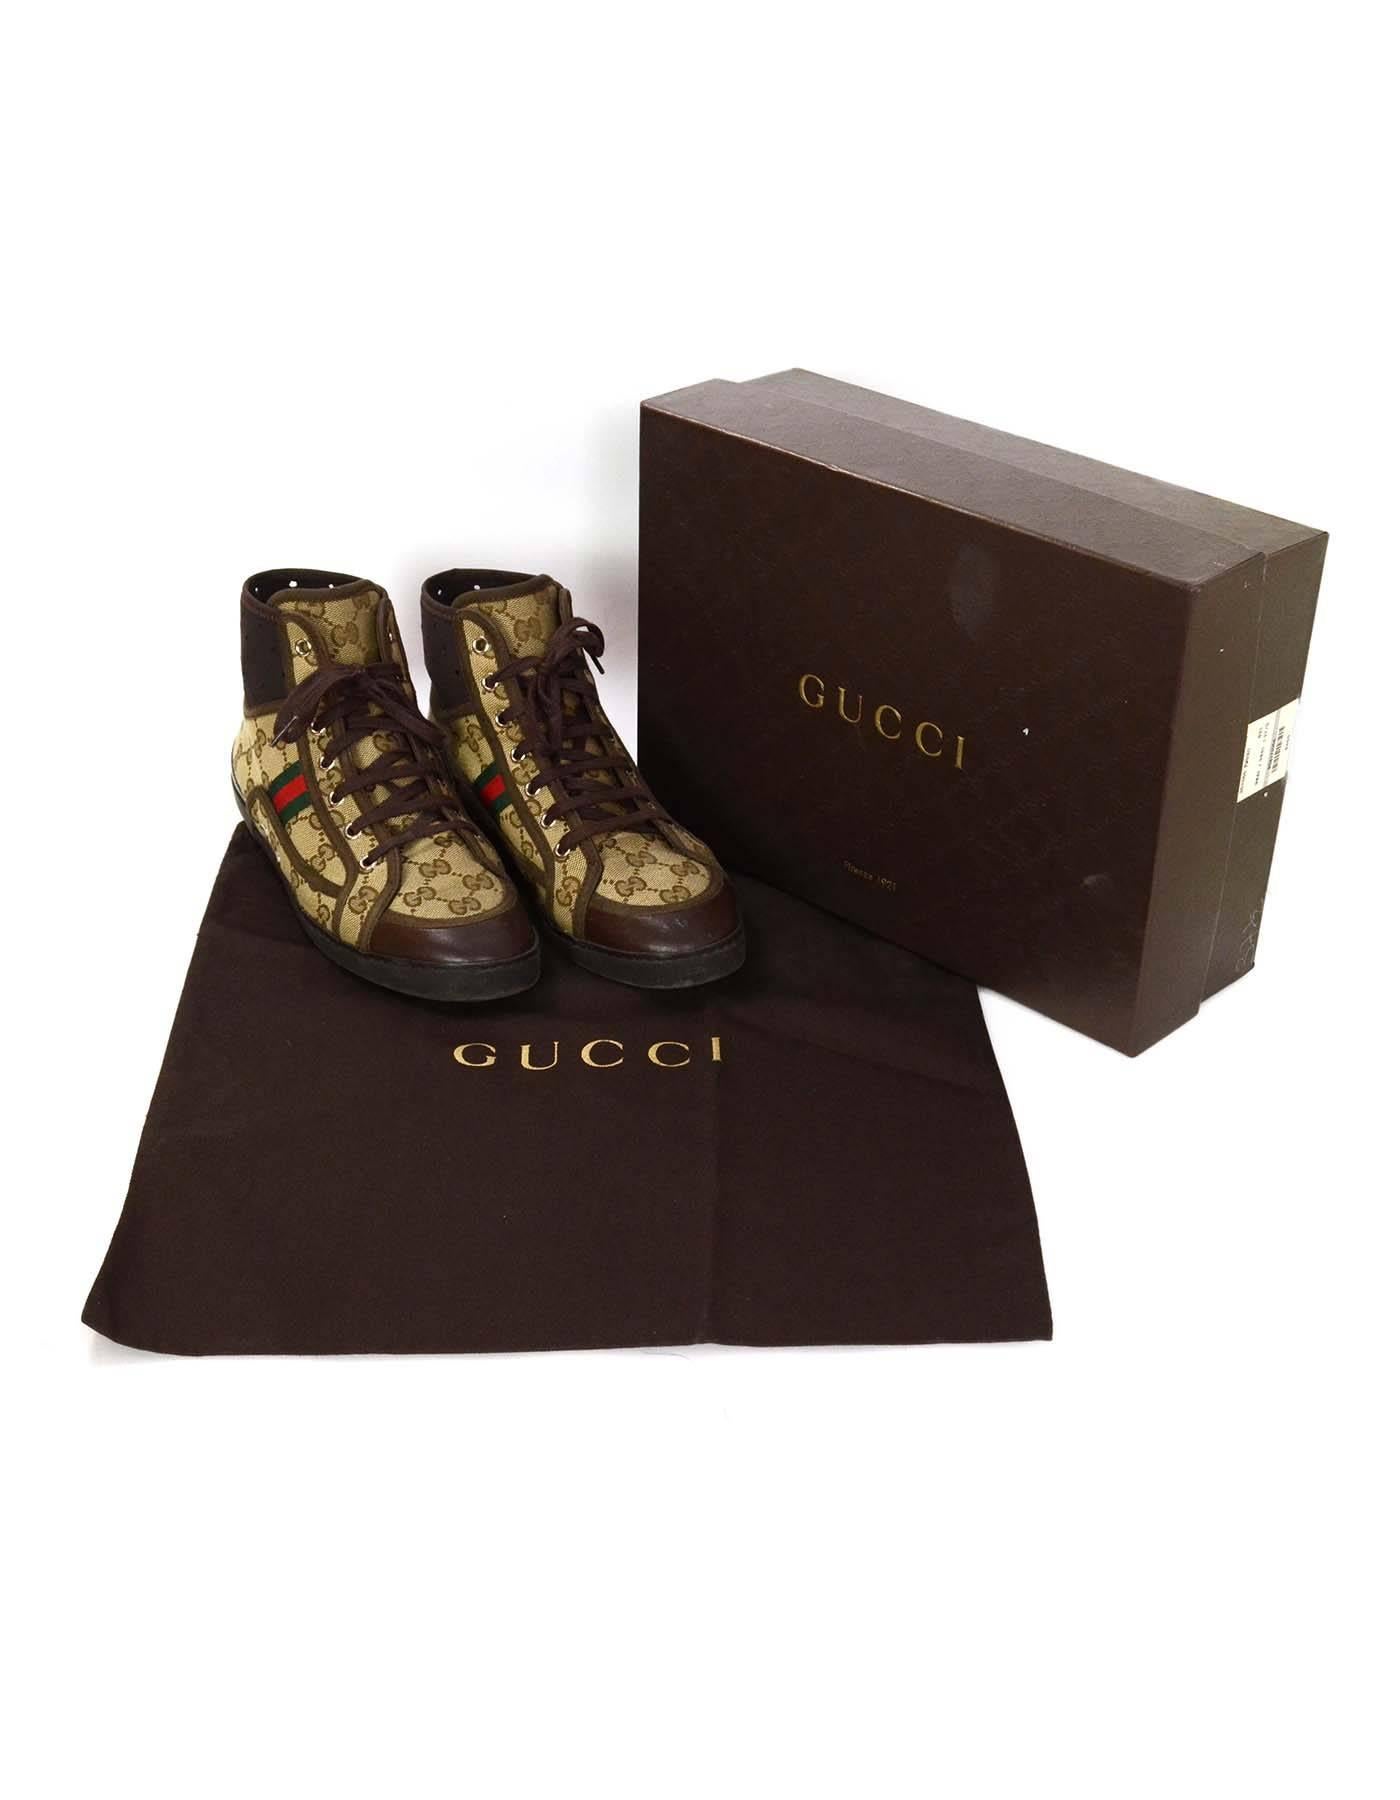 Gucci Monogram Tan & Brown High Top Sneakers sz 37.5 3